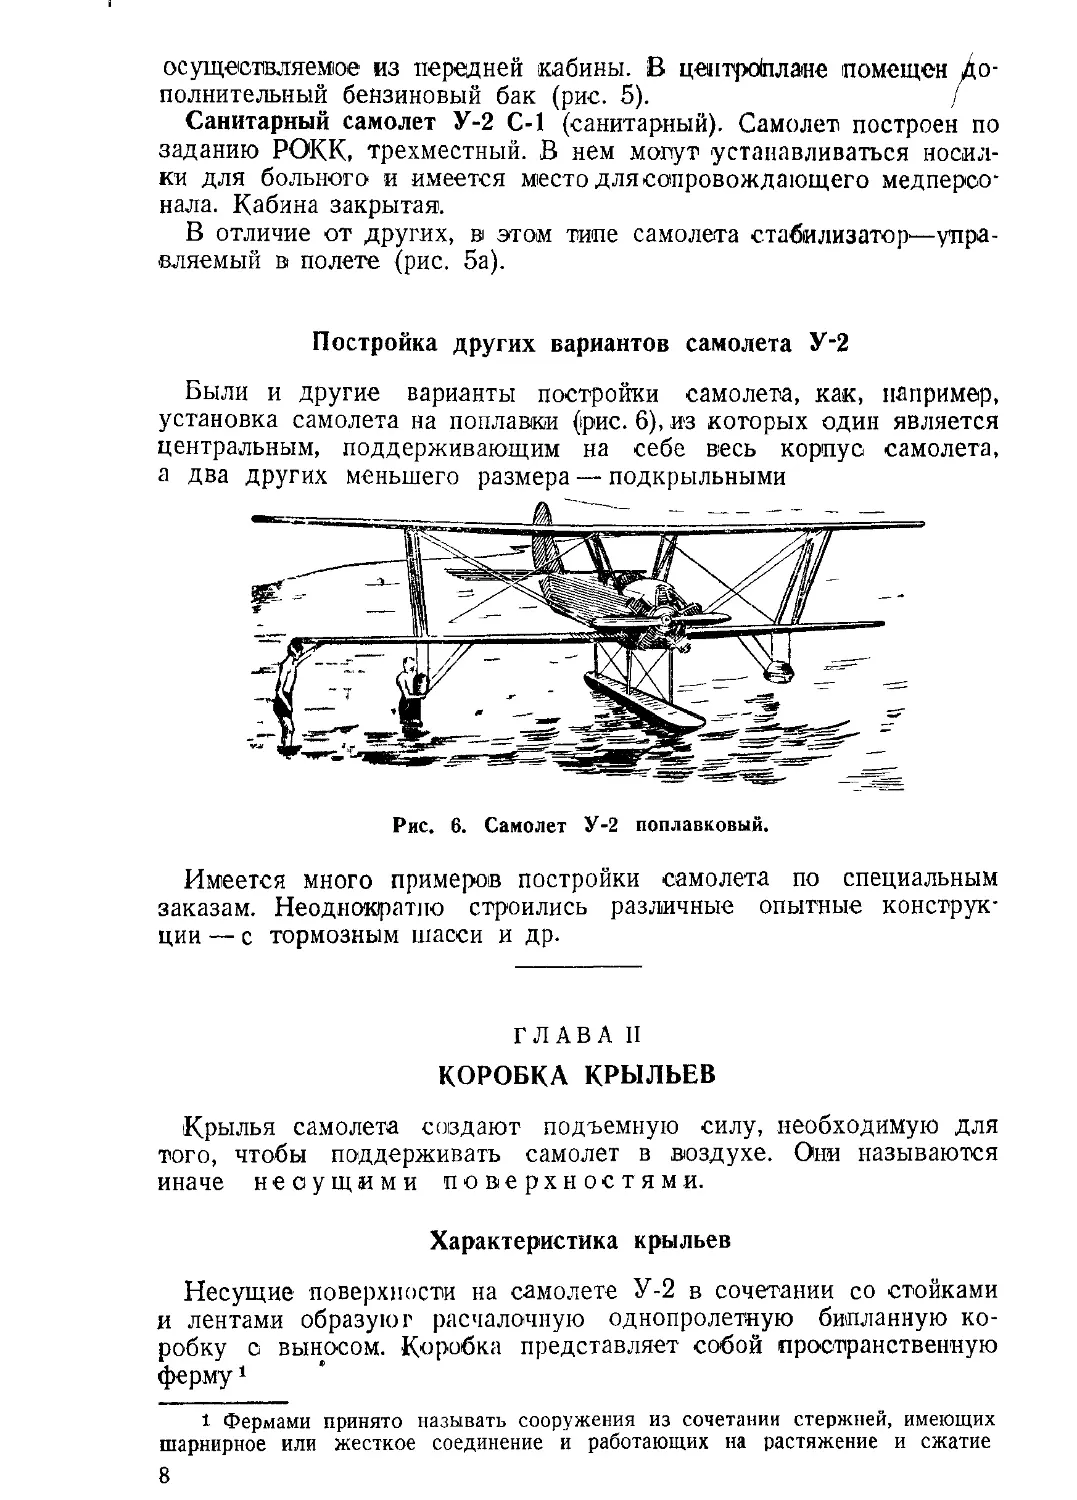 Постройка других вариантов самолета У-2.
Коробка крыльев.